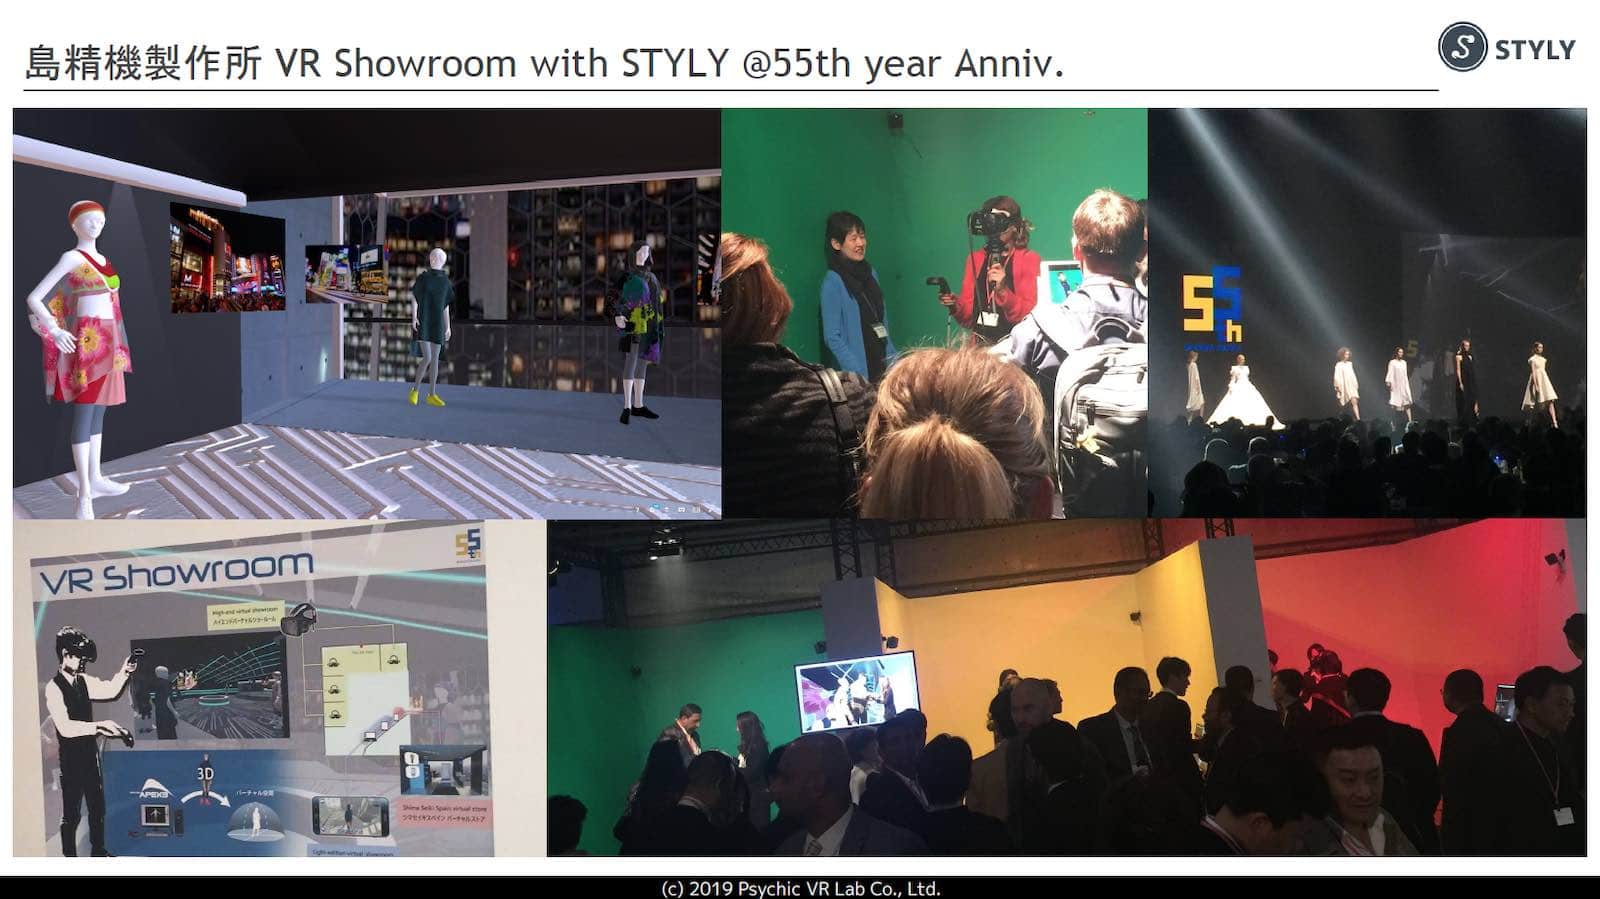 資料：島精機製作所 VR Showroom with STYLY @55th year Anniv.の様子